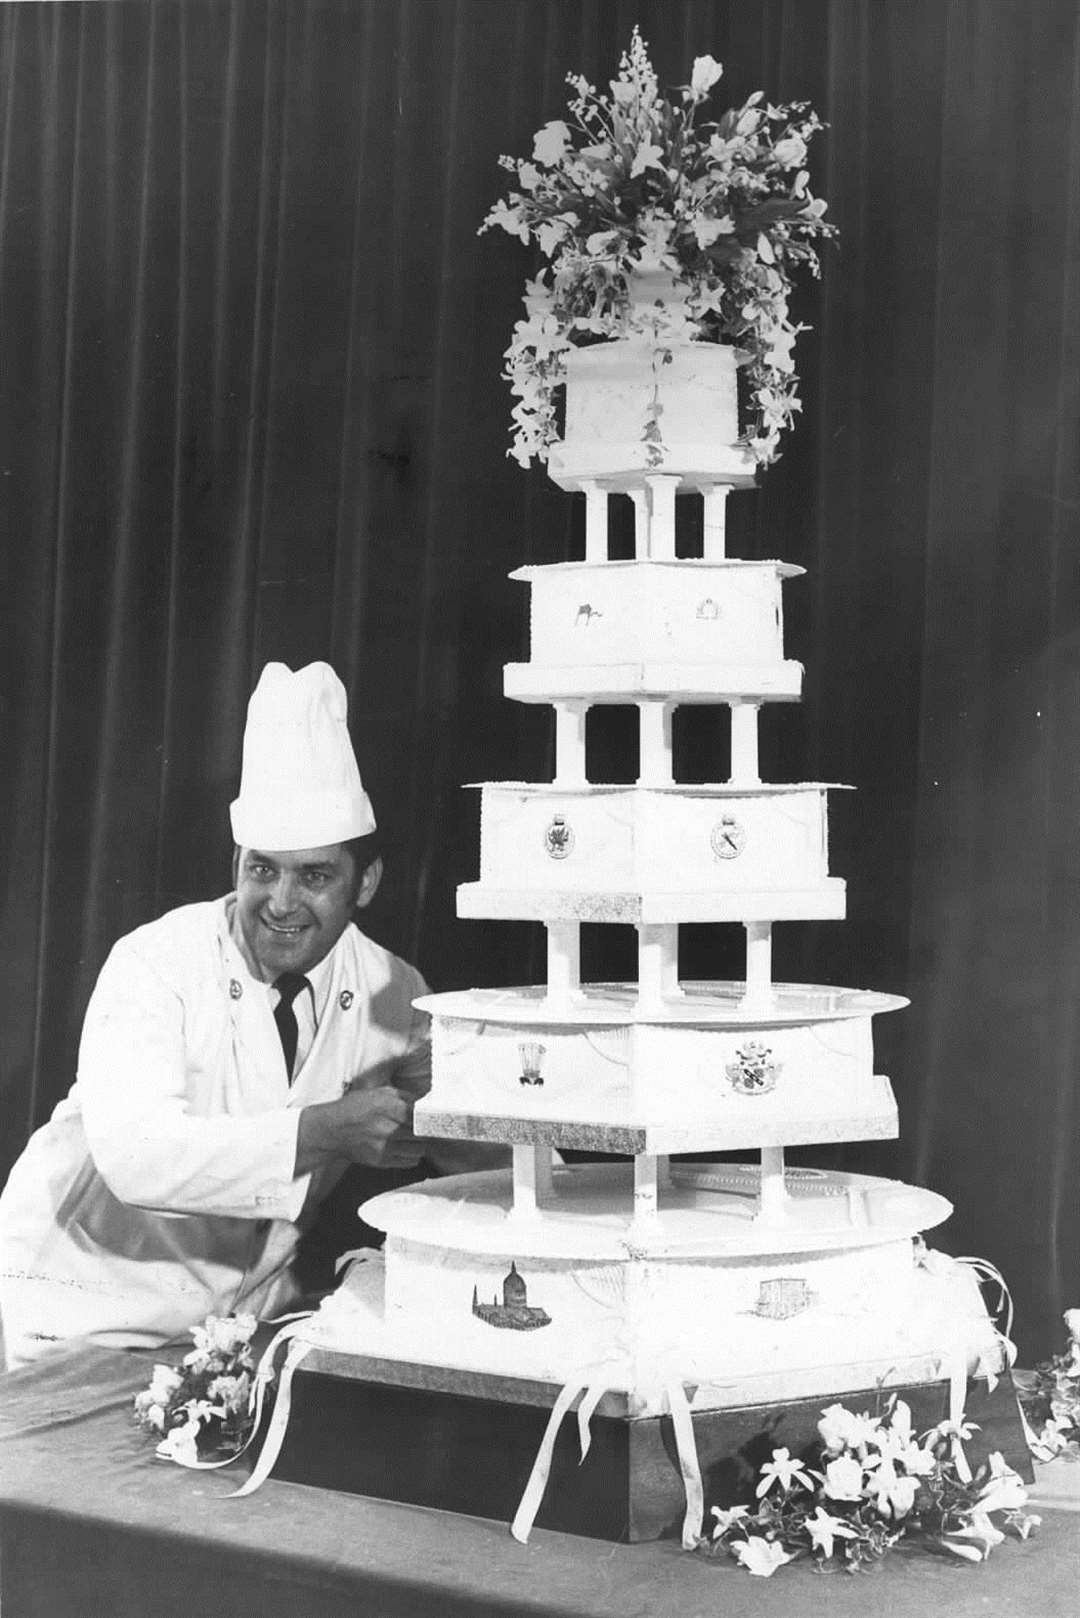 David Avery with the Royal Wedding cake made at HMS Pembroke, Chatham